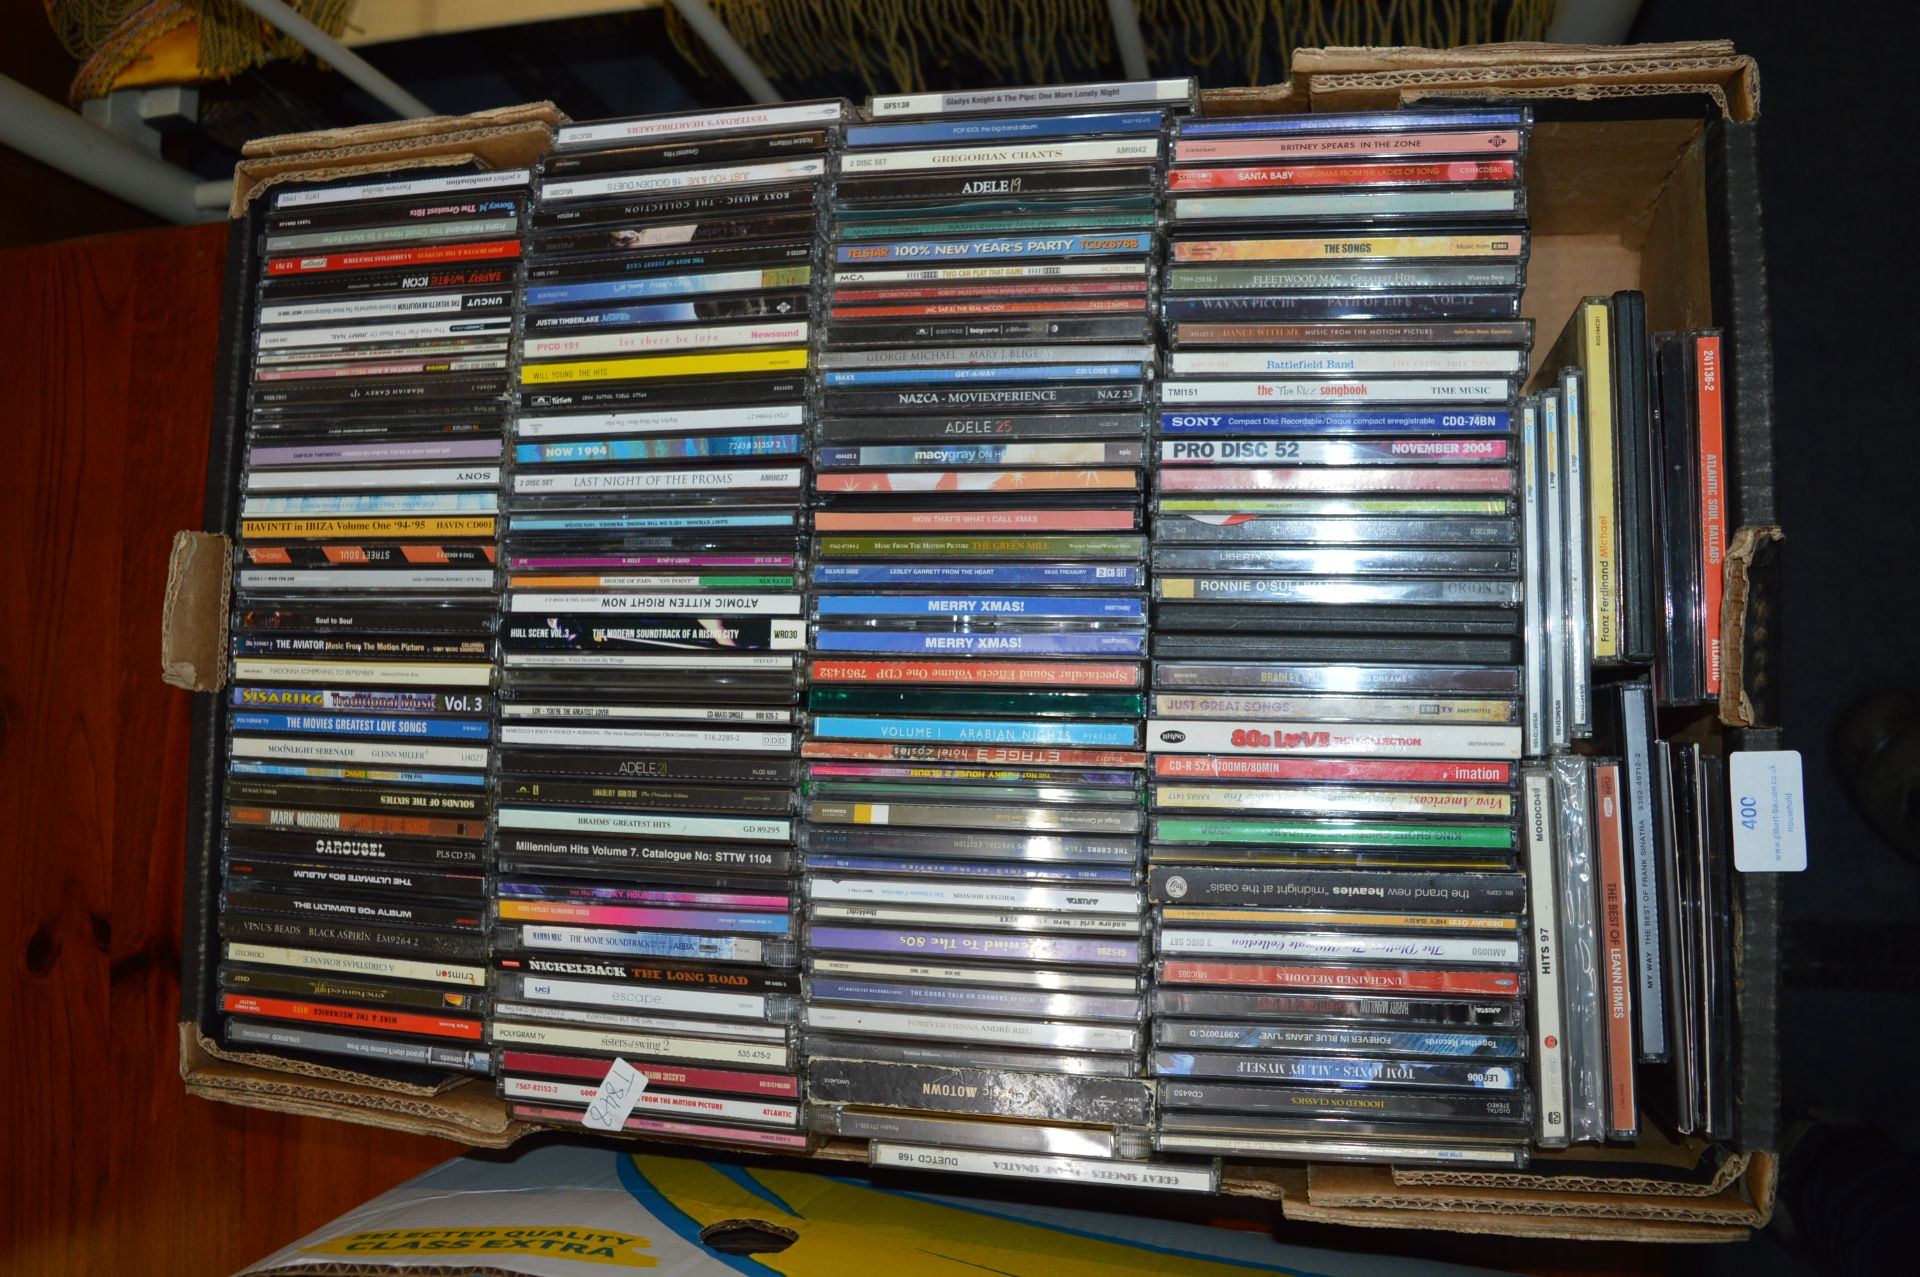 ~130 CDs